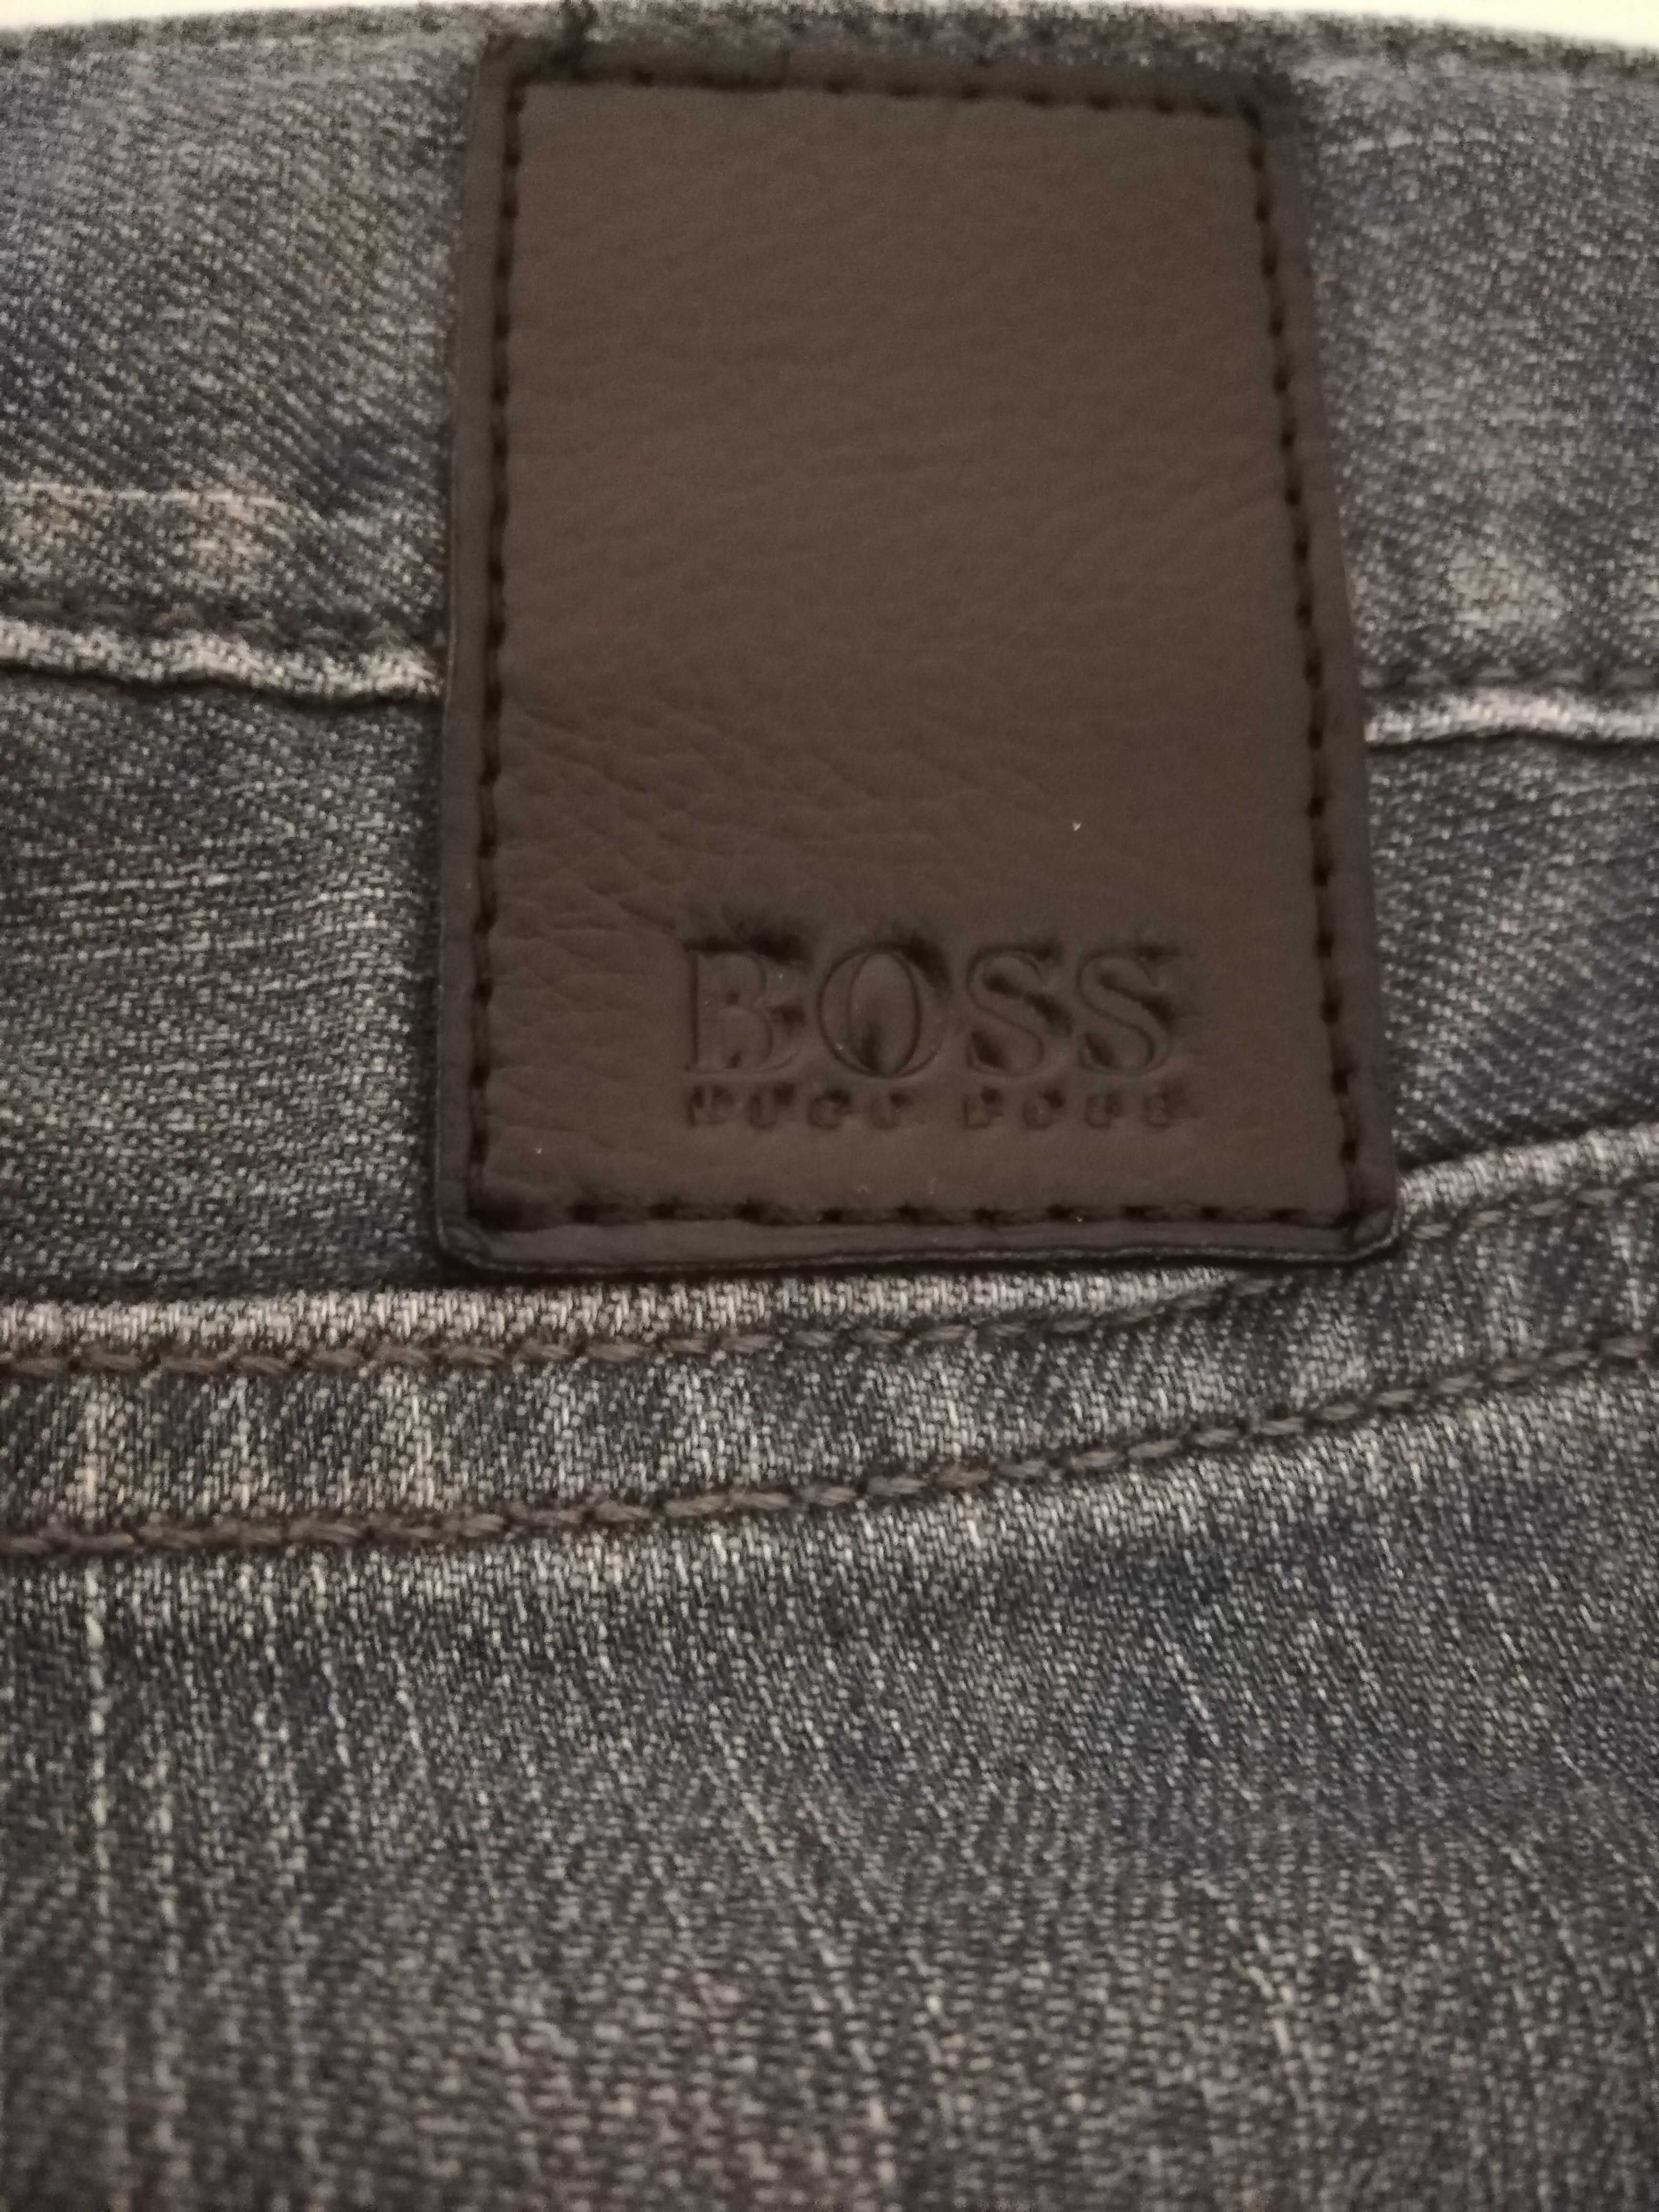 Spodnie męskie Hugo Boss Stretch 31/32 Jeans logowania S/M